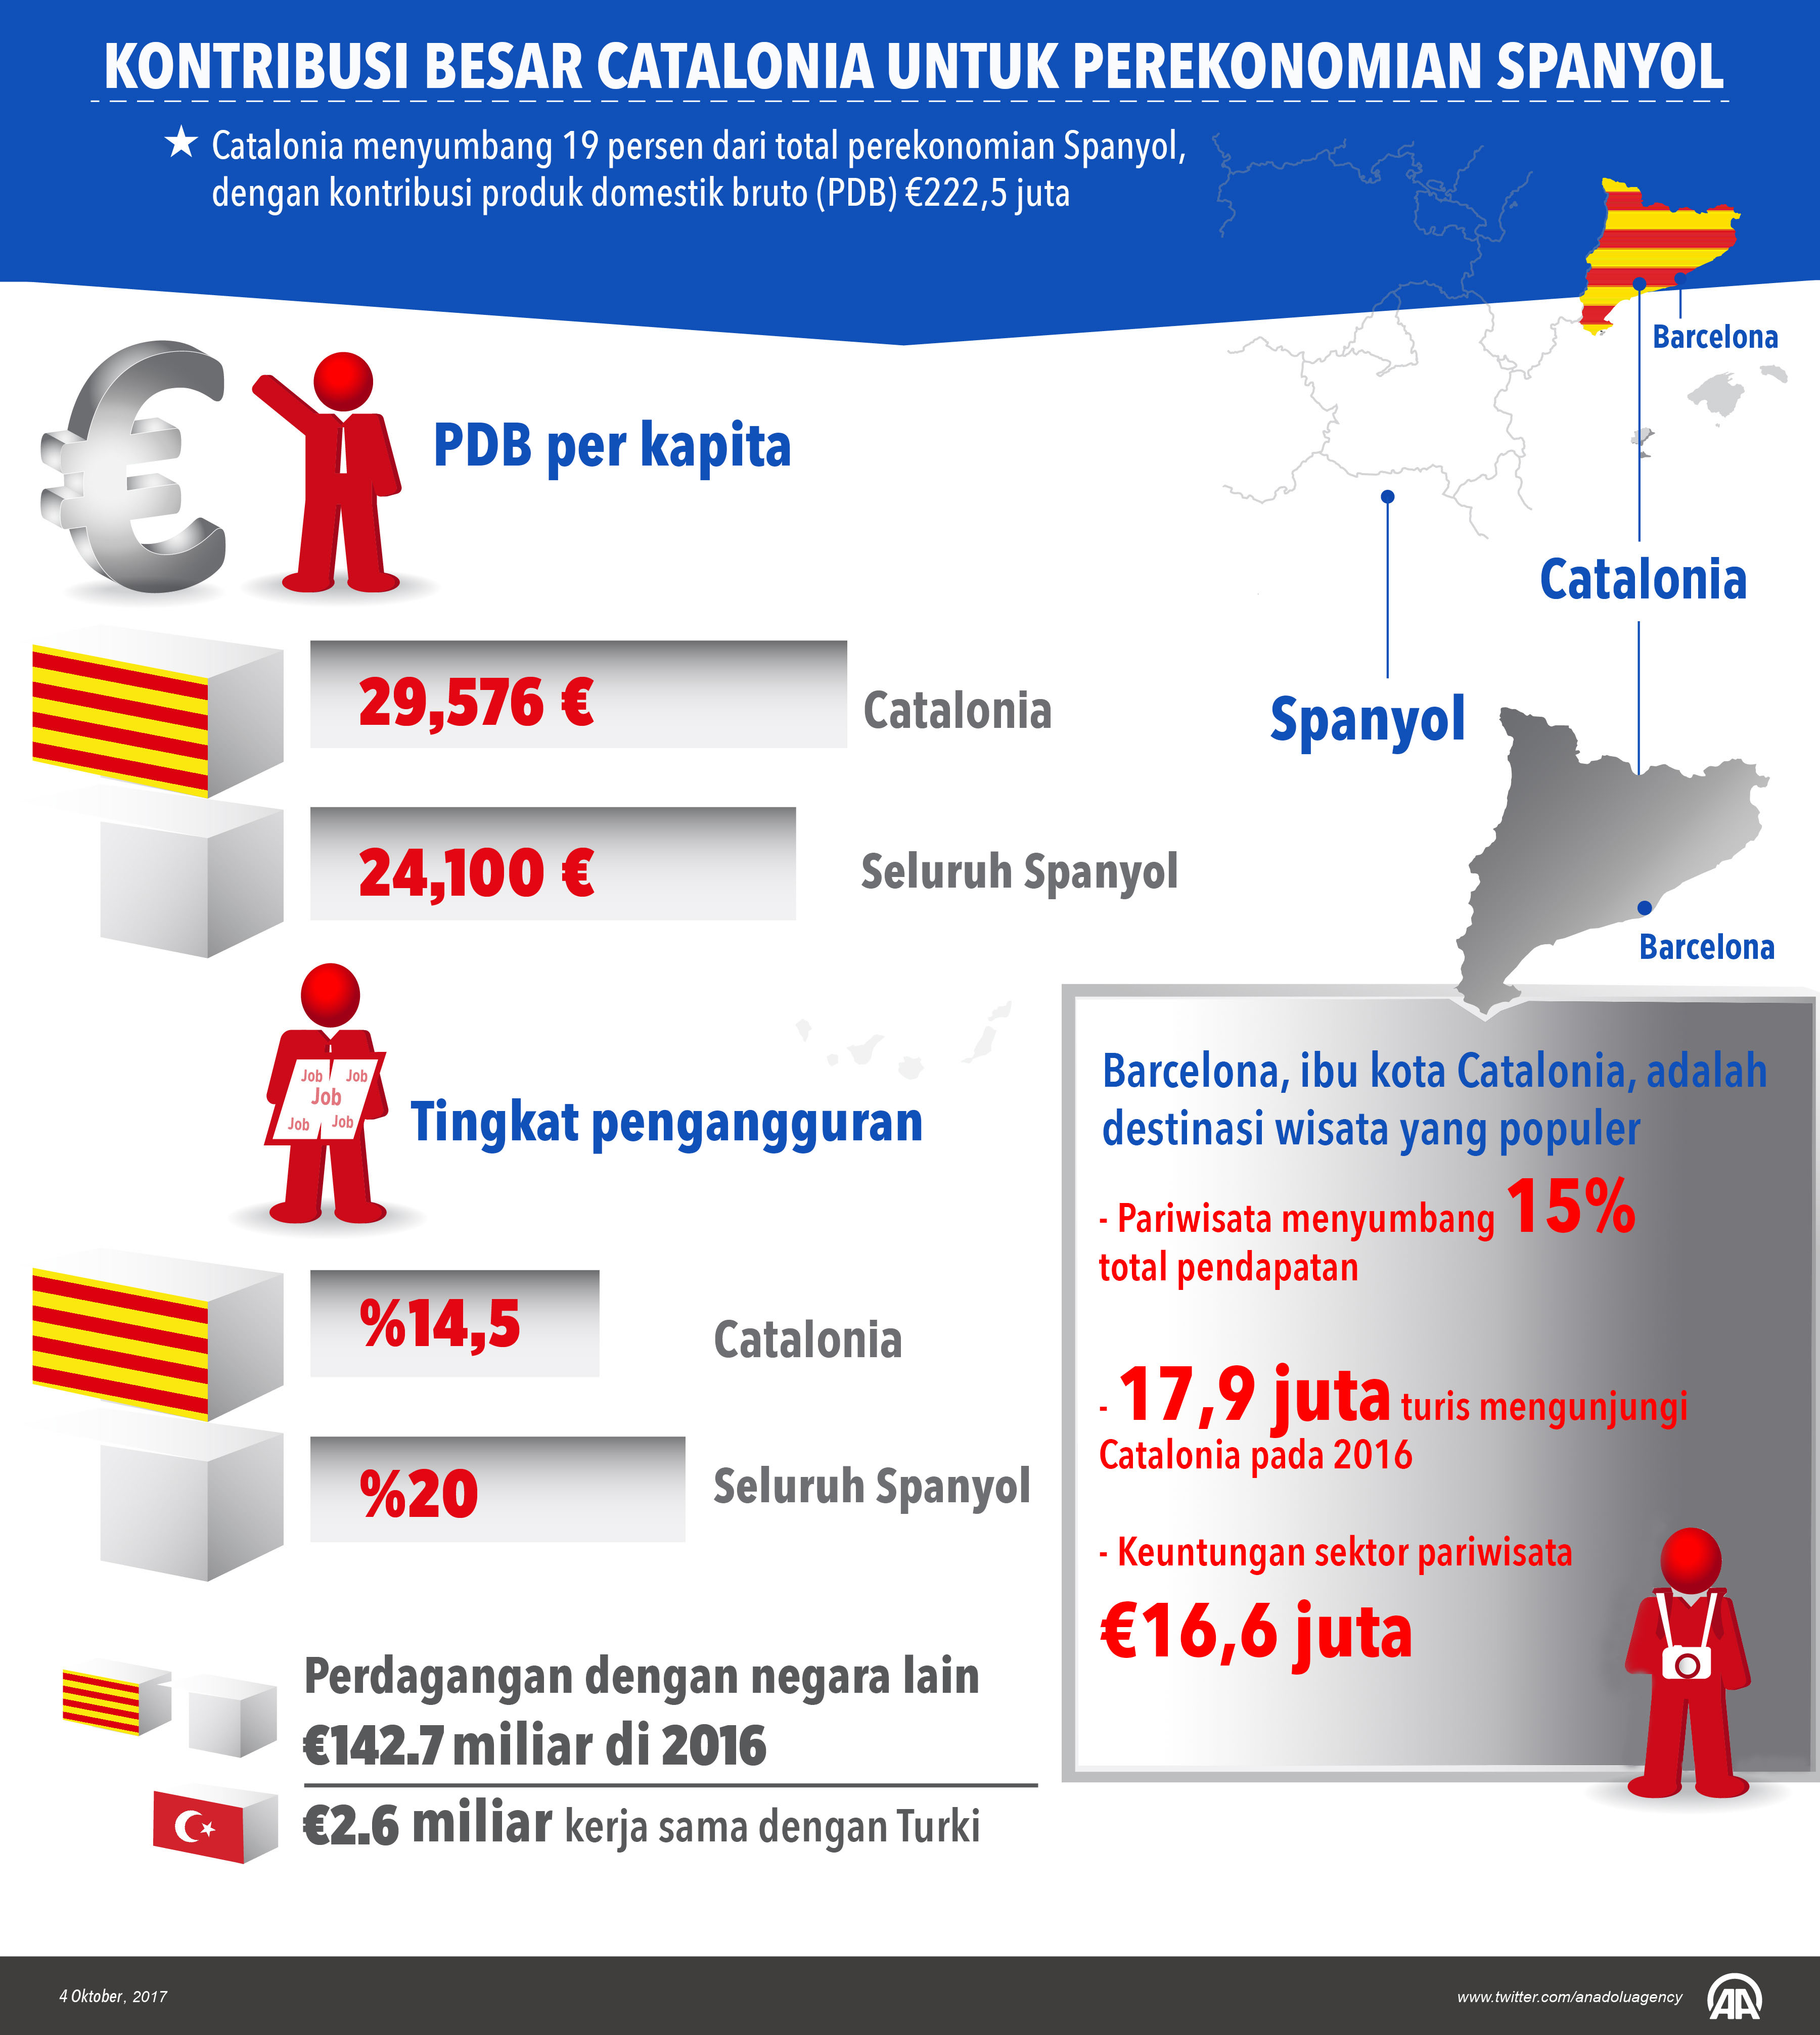 Kontribusi Catalonia untuk perekonomian Spanyol